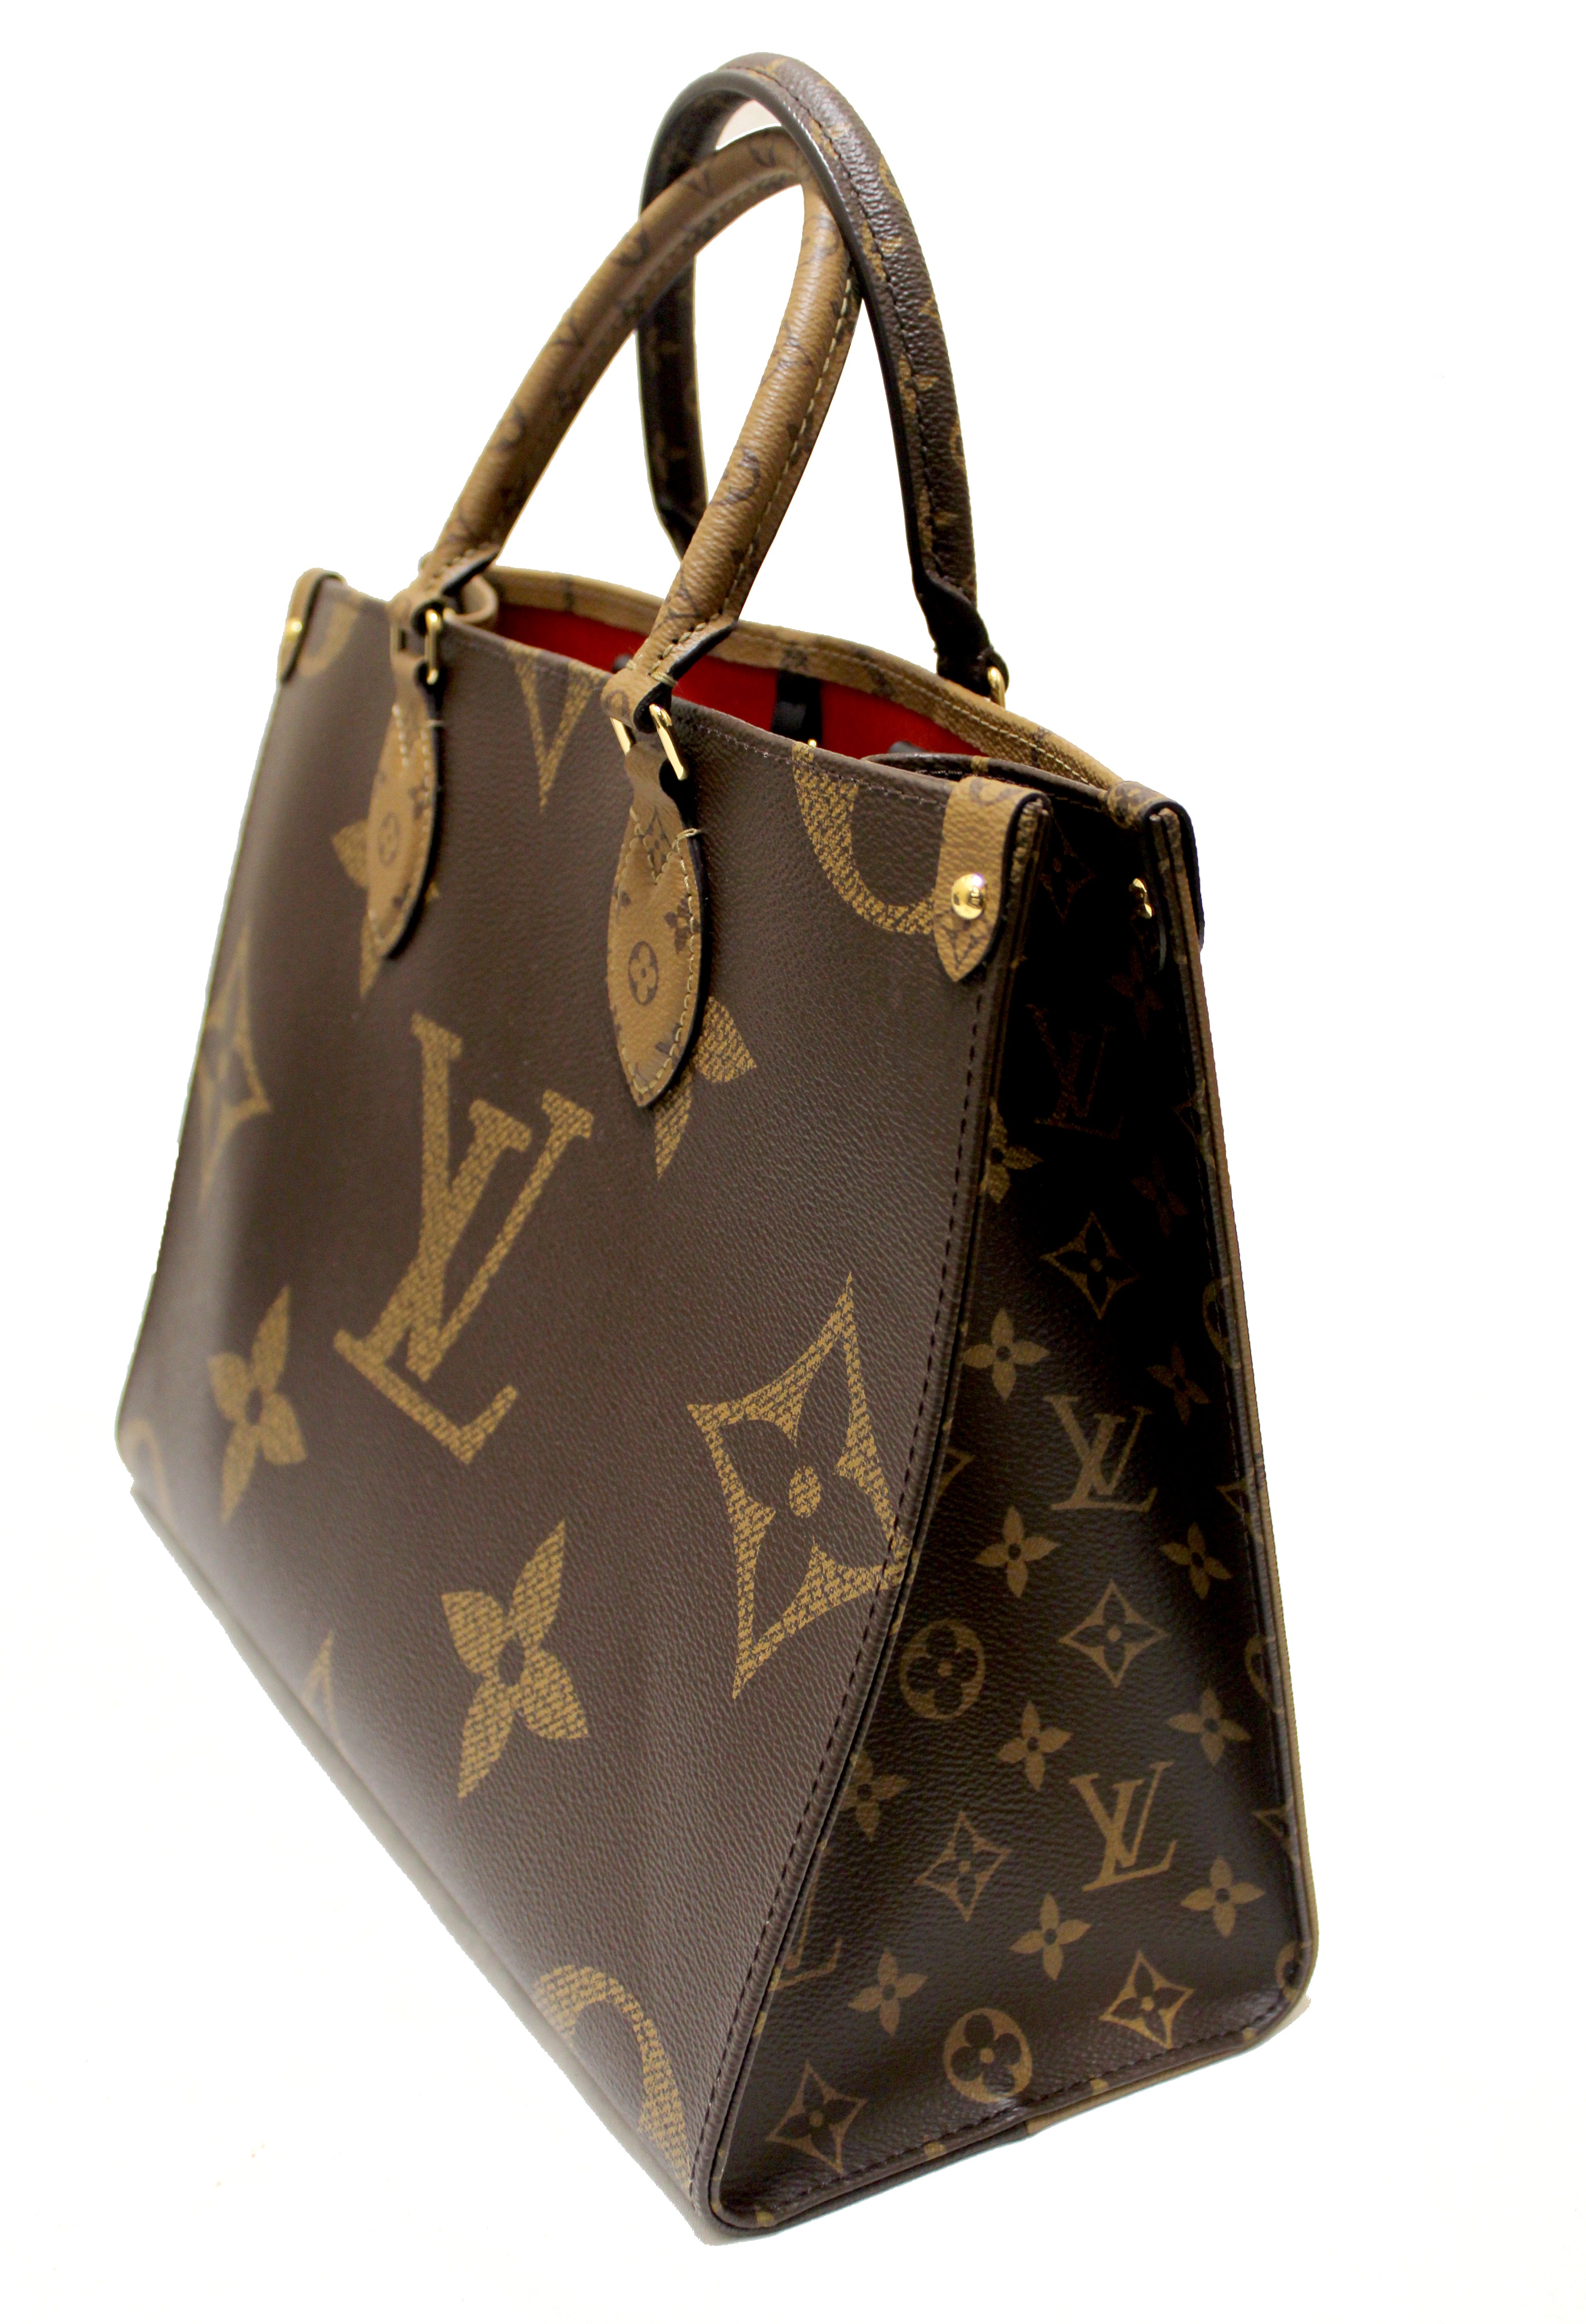 Authentic Louis Vuitton OnTheGo MM Monogram Tote bag – Paris Station Shop